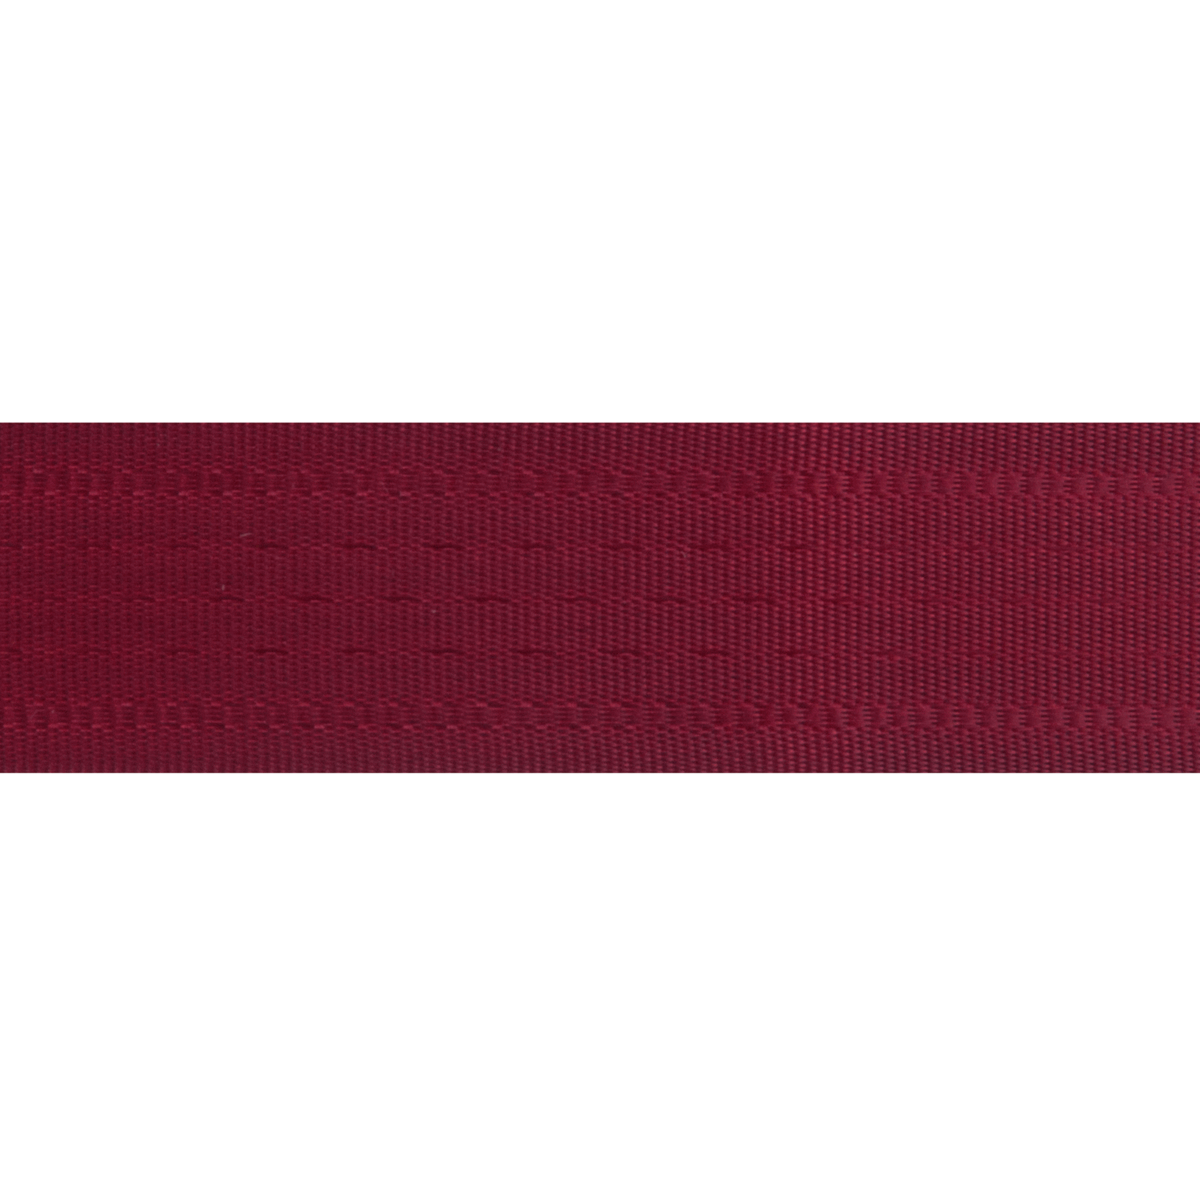 Seam Binding 2.5m x 25mm - Dark Red